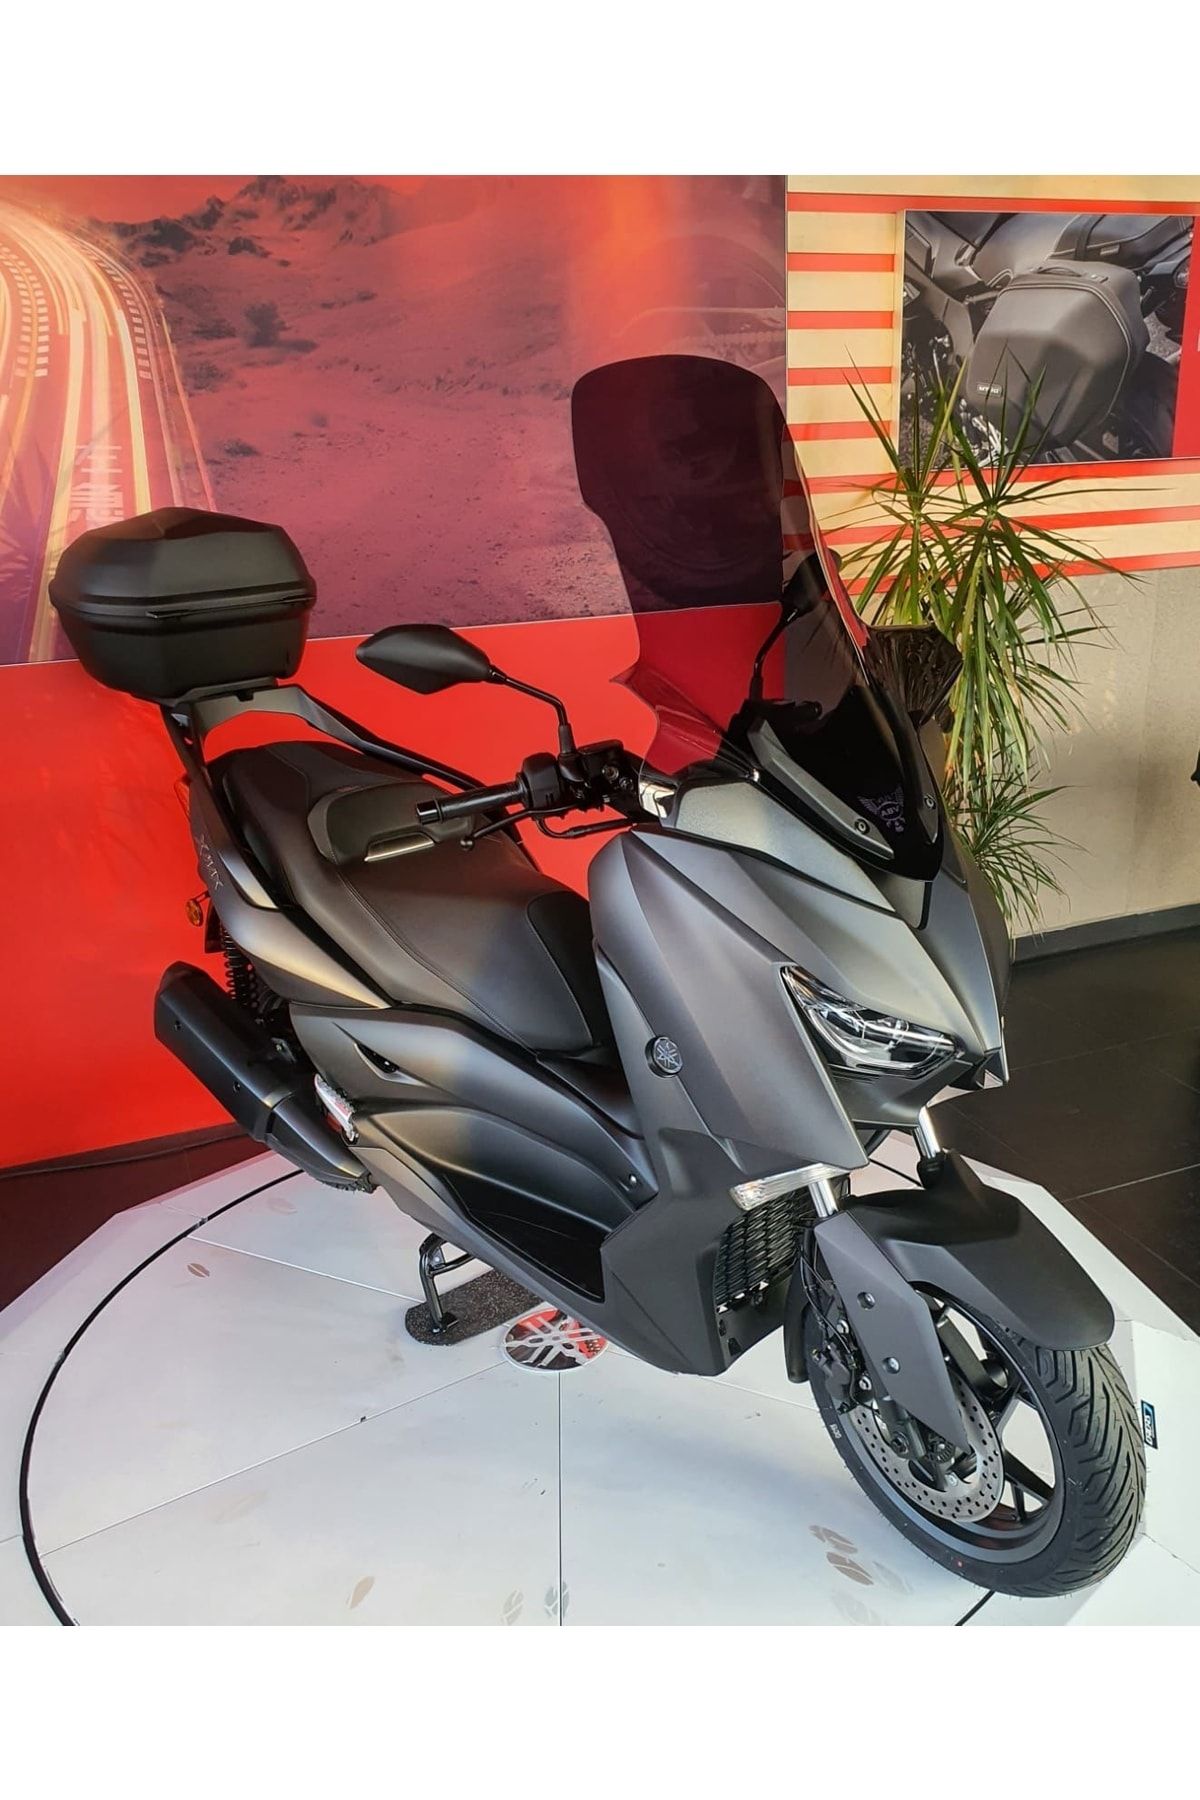 Yamaha Xmax 125 250 300 400 Füme Ön Cam Siperlik Tur Camı Abv 2018-2022 Model Uyumludur.